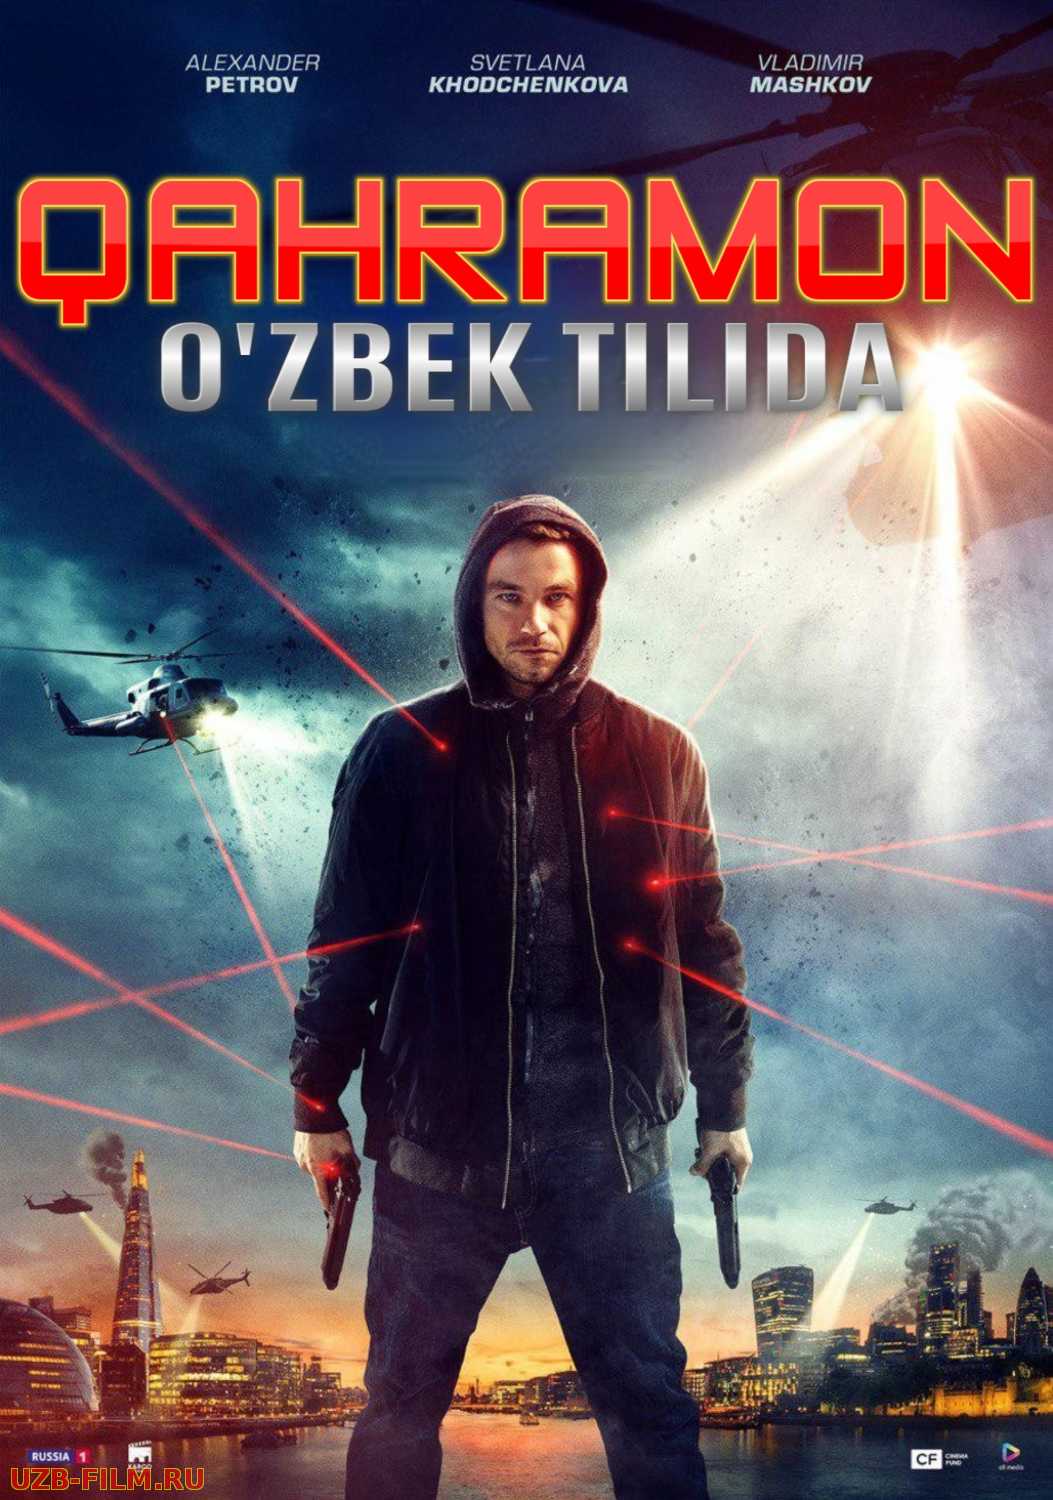 Qahramon Rossiya kinosi Uzbek tilida 2019 HD O'zbek tarjima tas-ix skachat